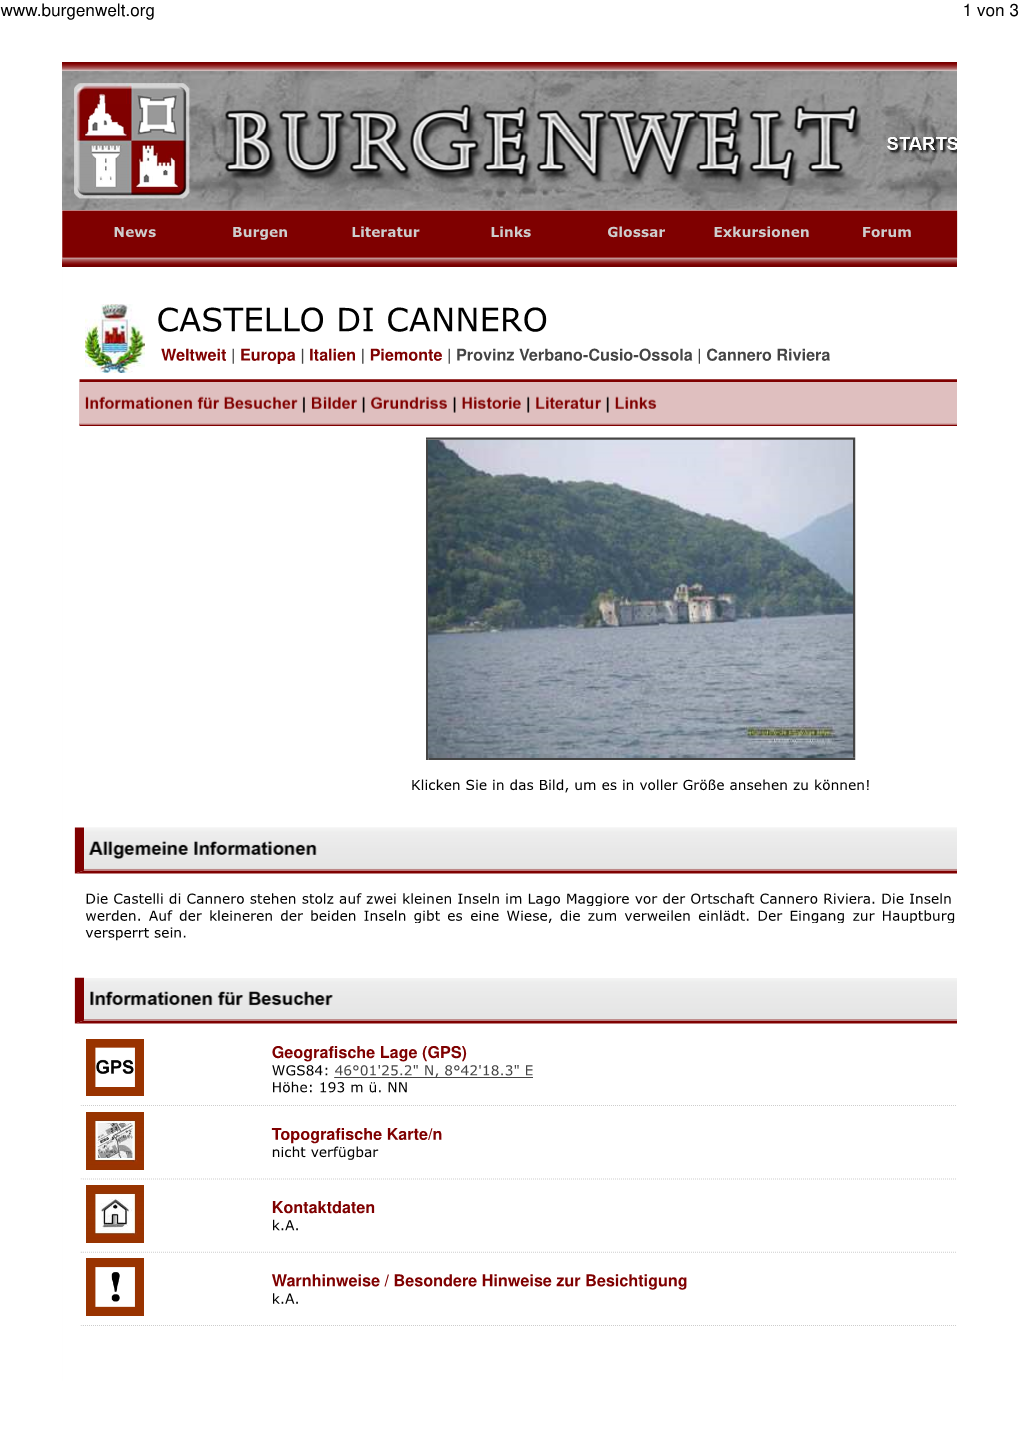 CASTELLO DI CANNERO Weltweit | Europa | Italien | Piemonte | Provinz Verbano-Cusio-Ossola | Cannero Riviera